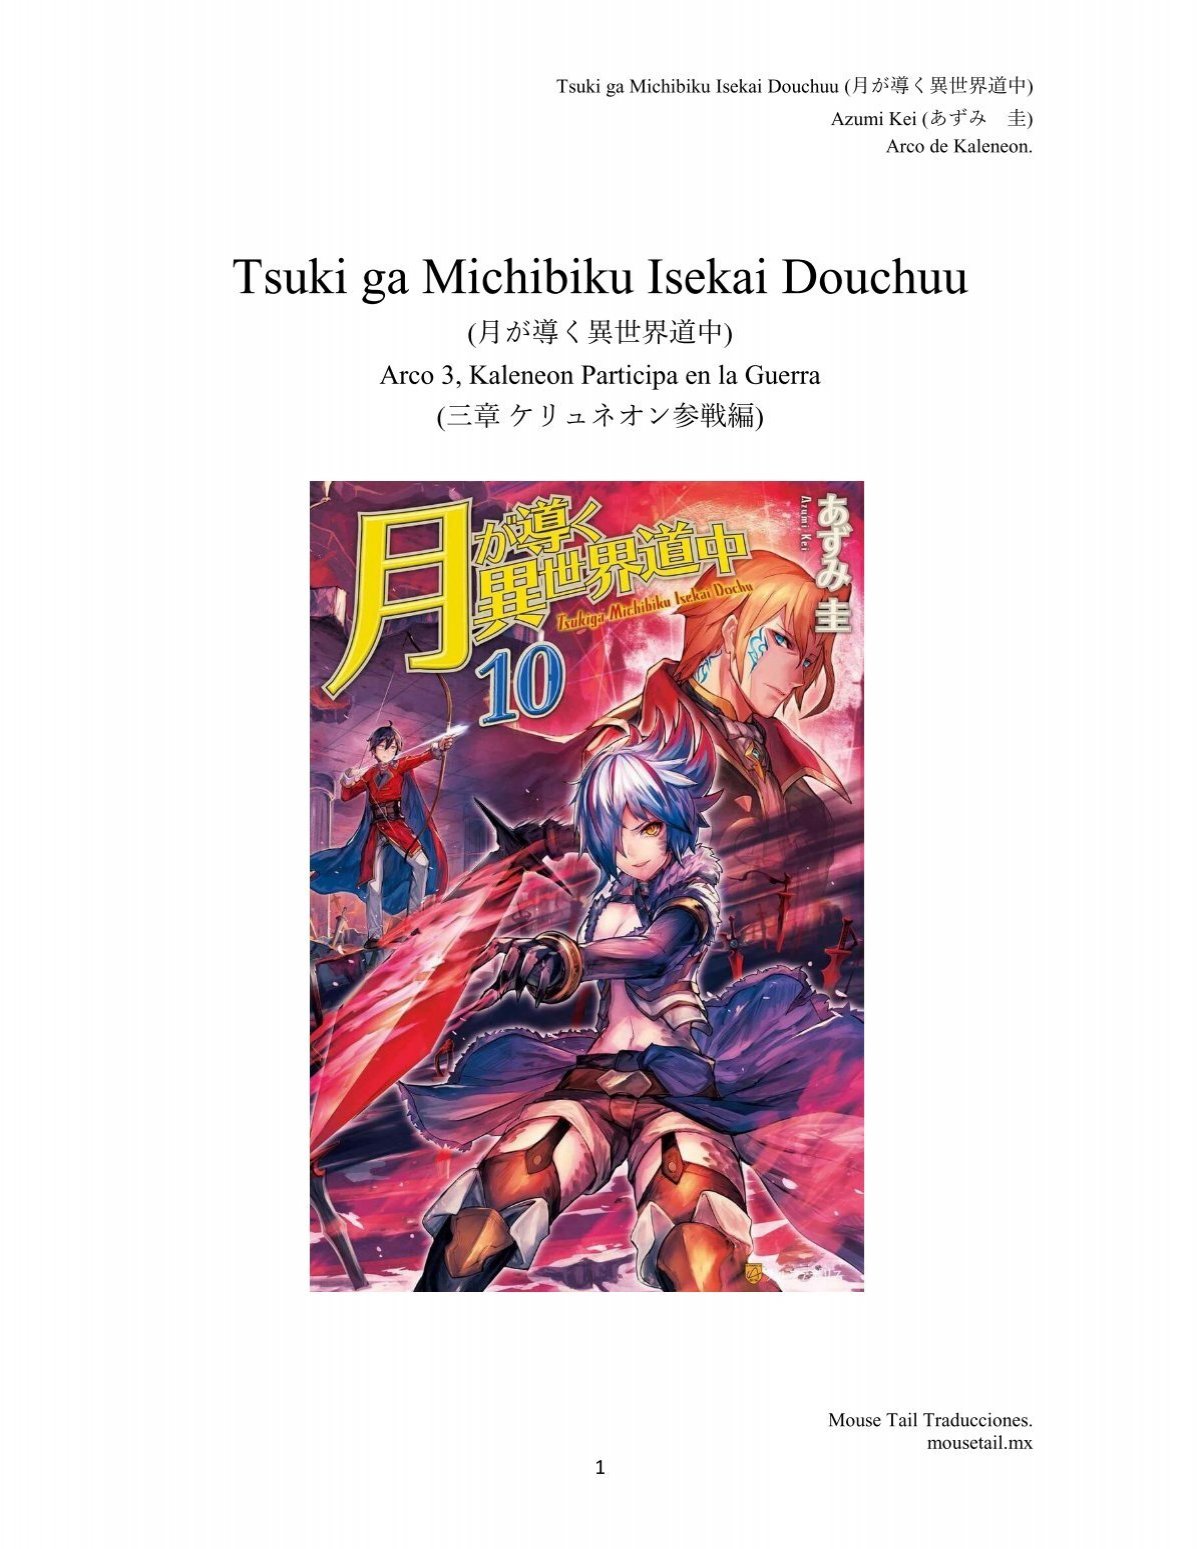 Tsuki ga Michibiku Isekai Douchuu Temporada 2 【Sin Censura】En